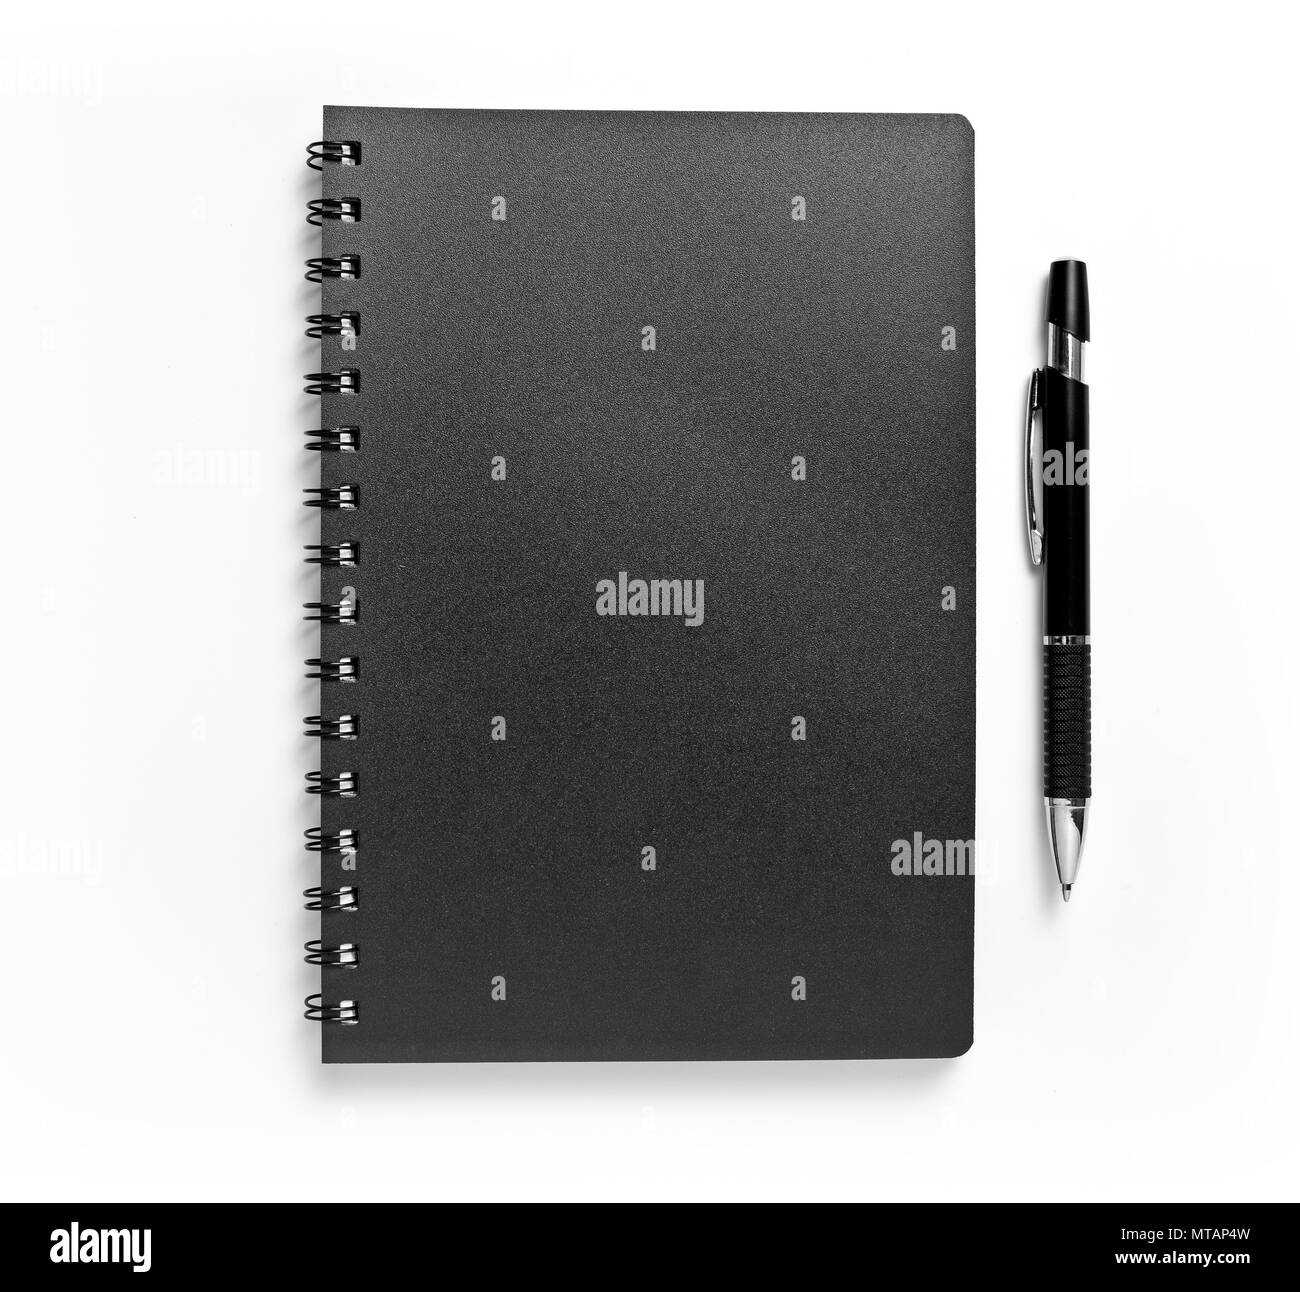 Notebook nero e penna isolati su sfondo bianco, identity design, modelli aziendali, azienda stile, set di articoli di cancelleria Foto Stock